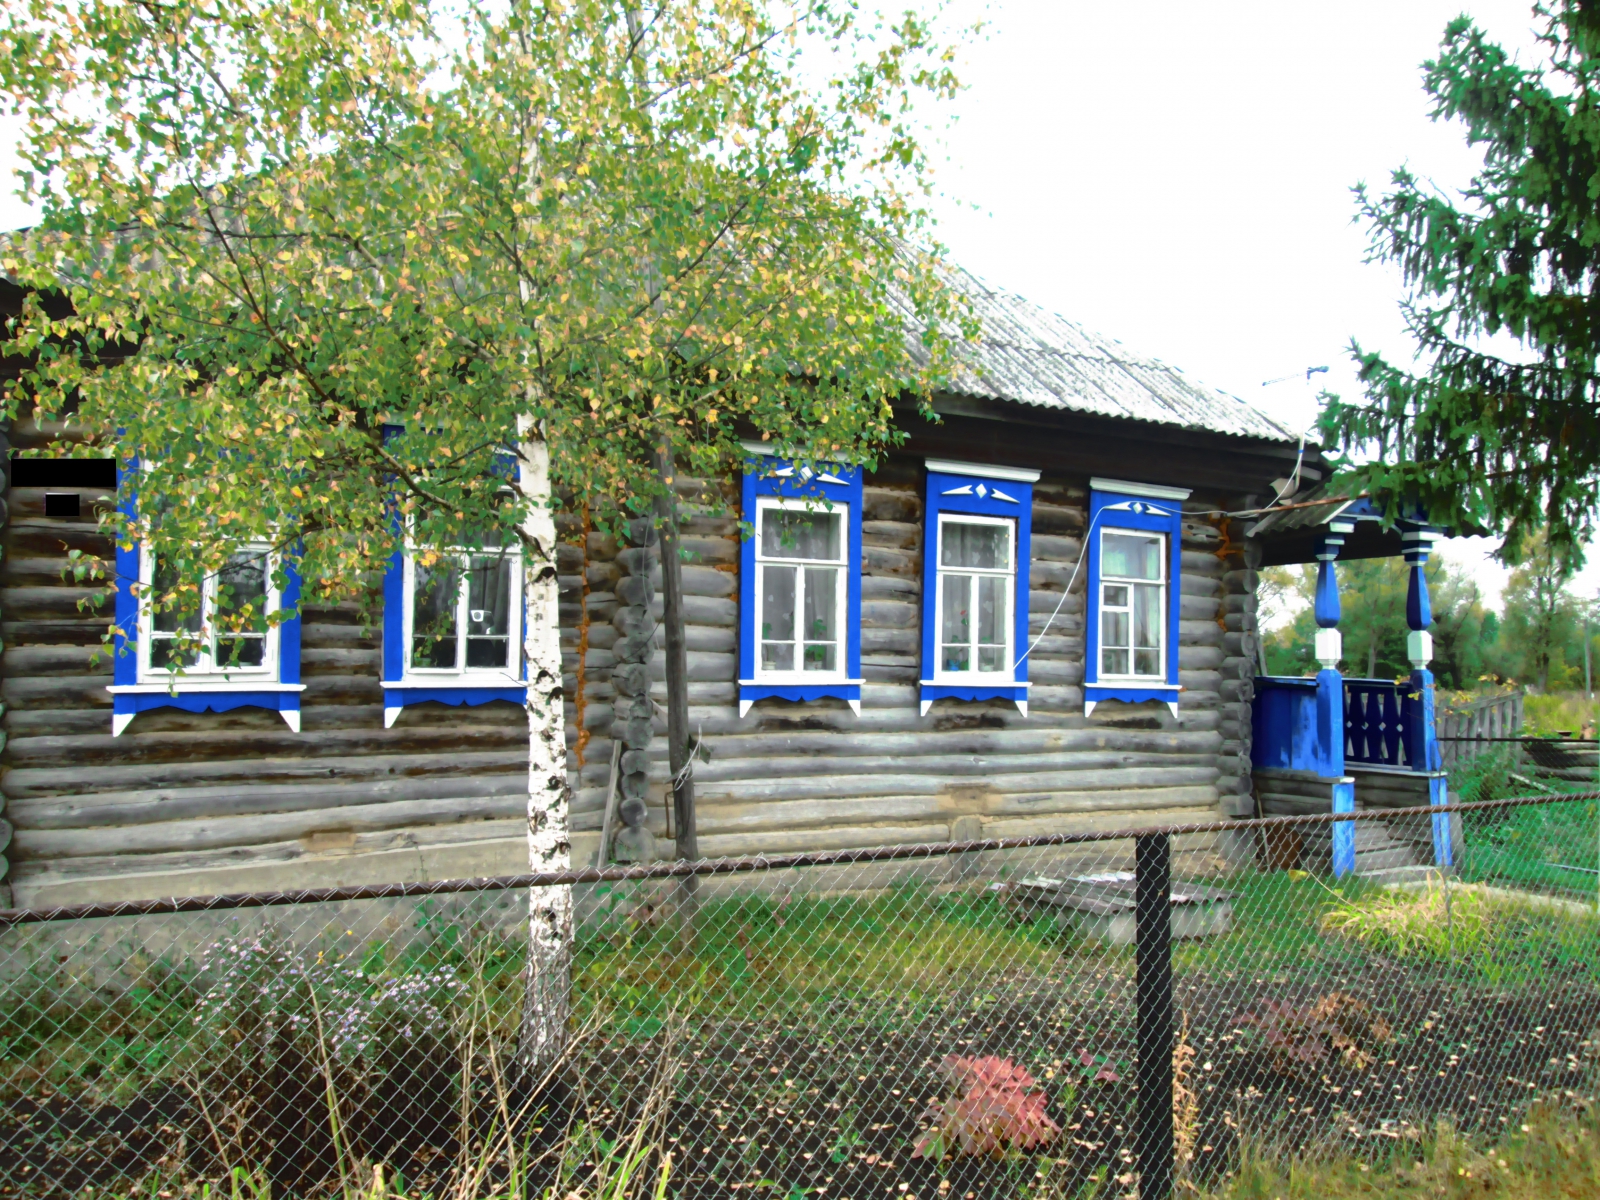 Село Ильмино Пензенской области